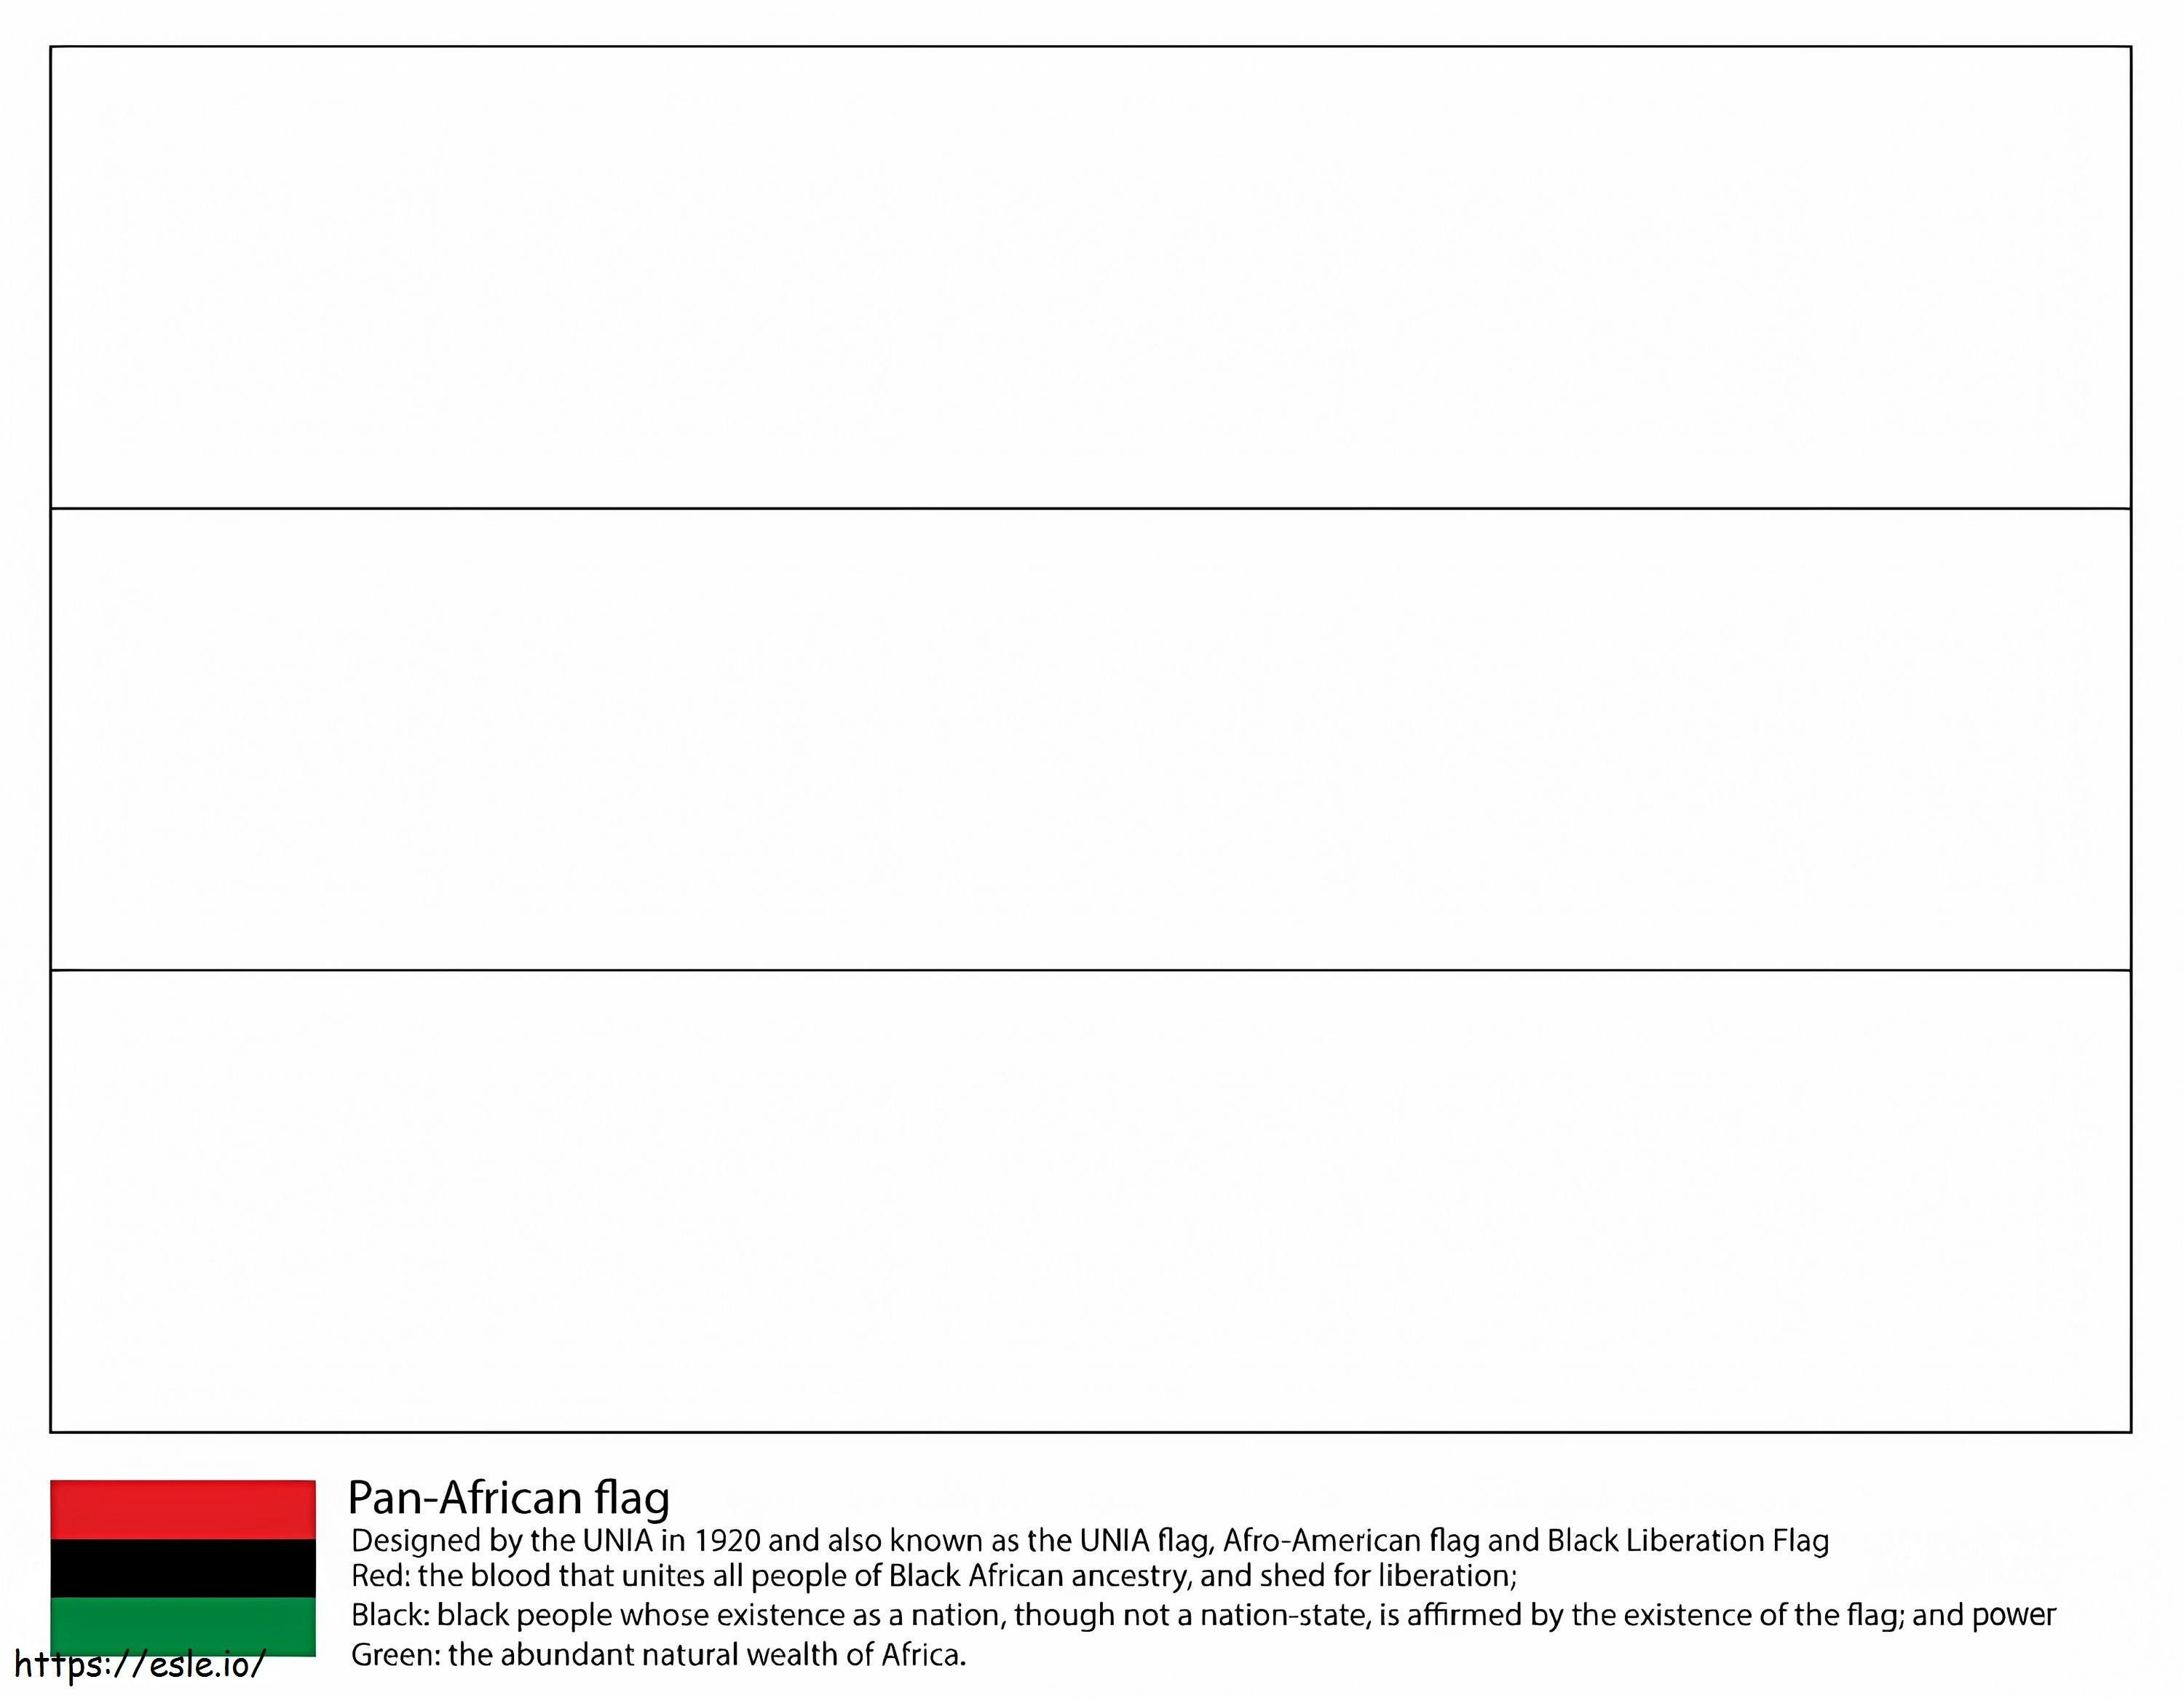  Steagul Panafrican de colorat